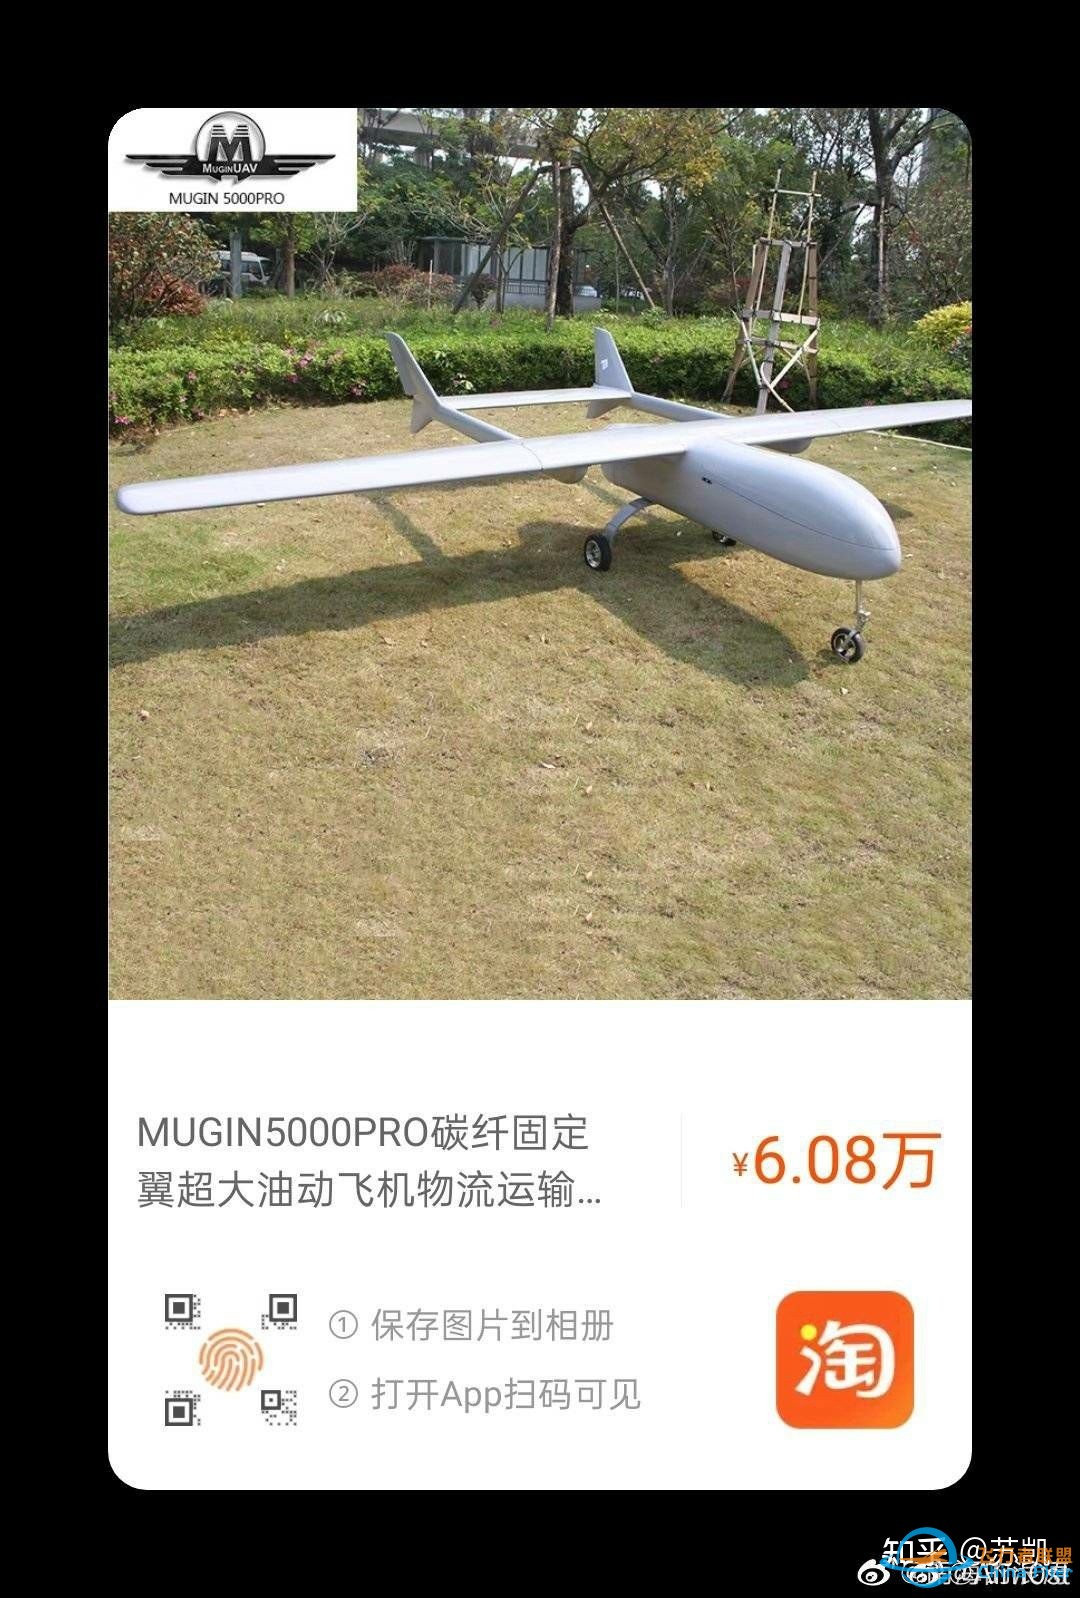 中国无人机技术是世界领先水平吗?-6.jpg